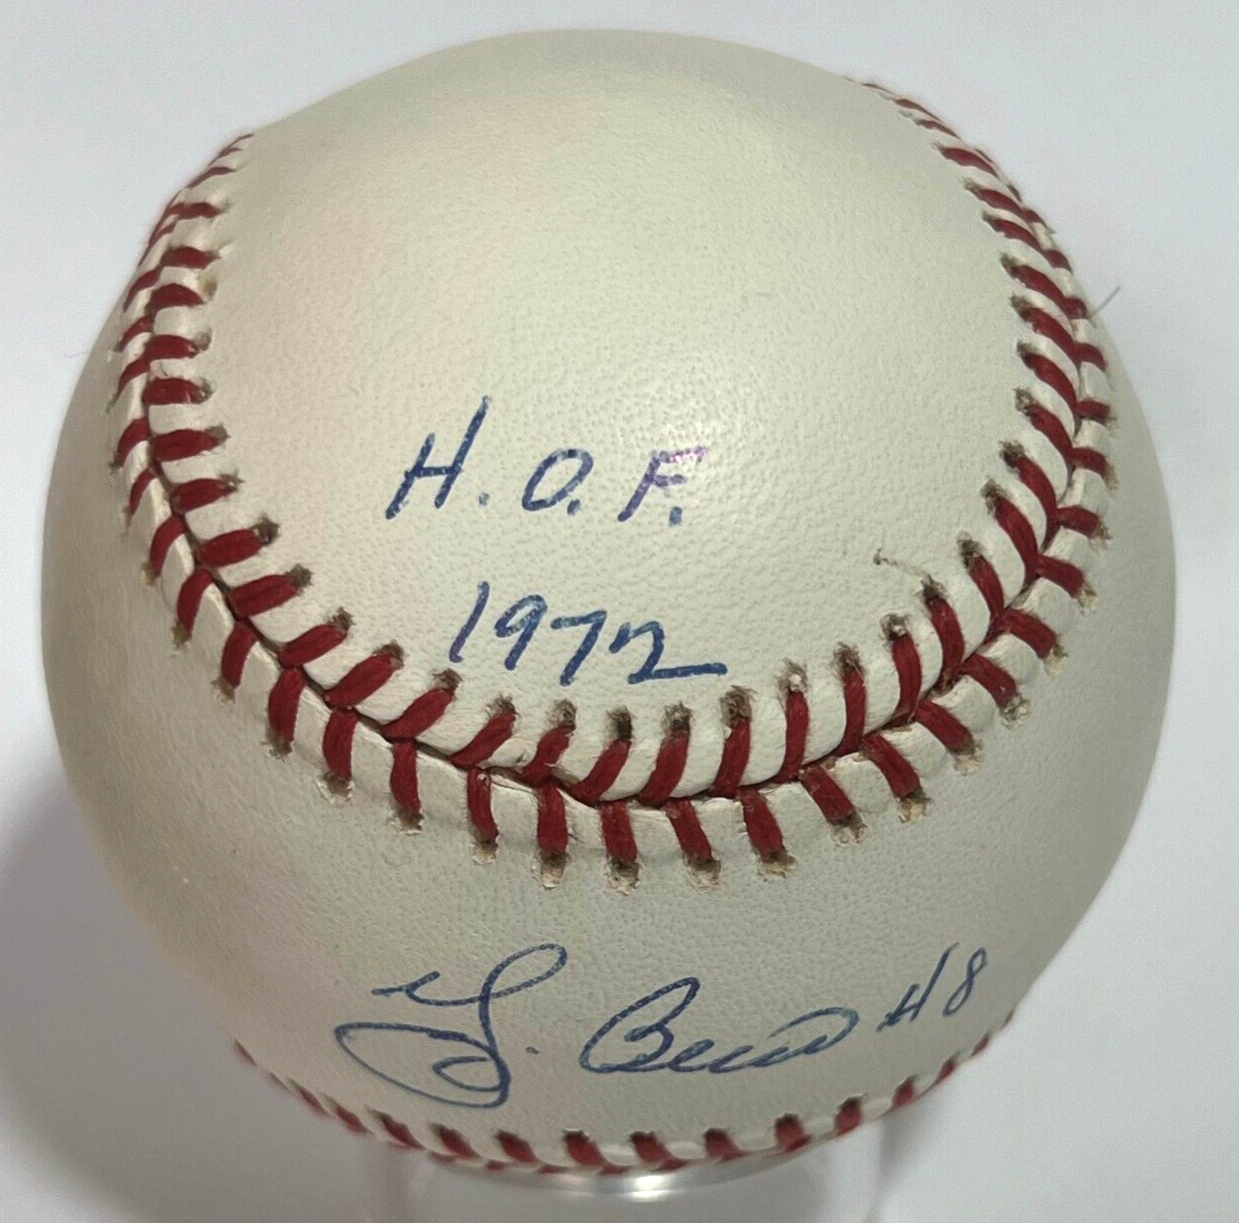 Yogi Berra Signed Baseball with HOF 1972 MVP 